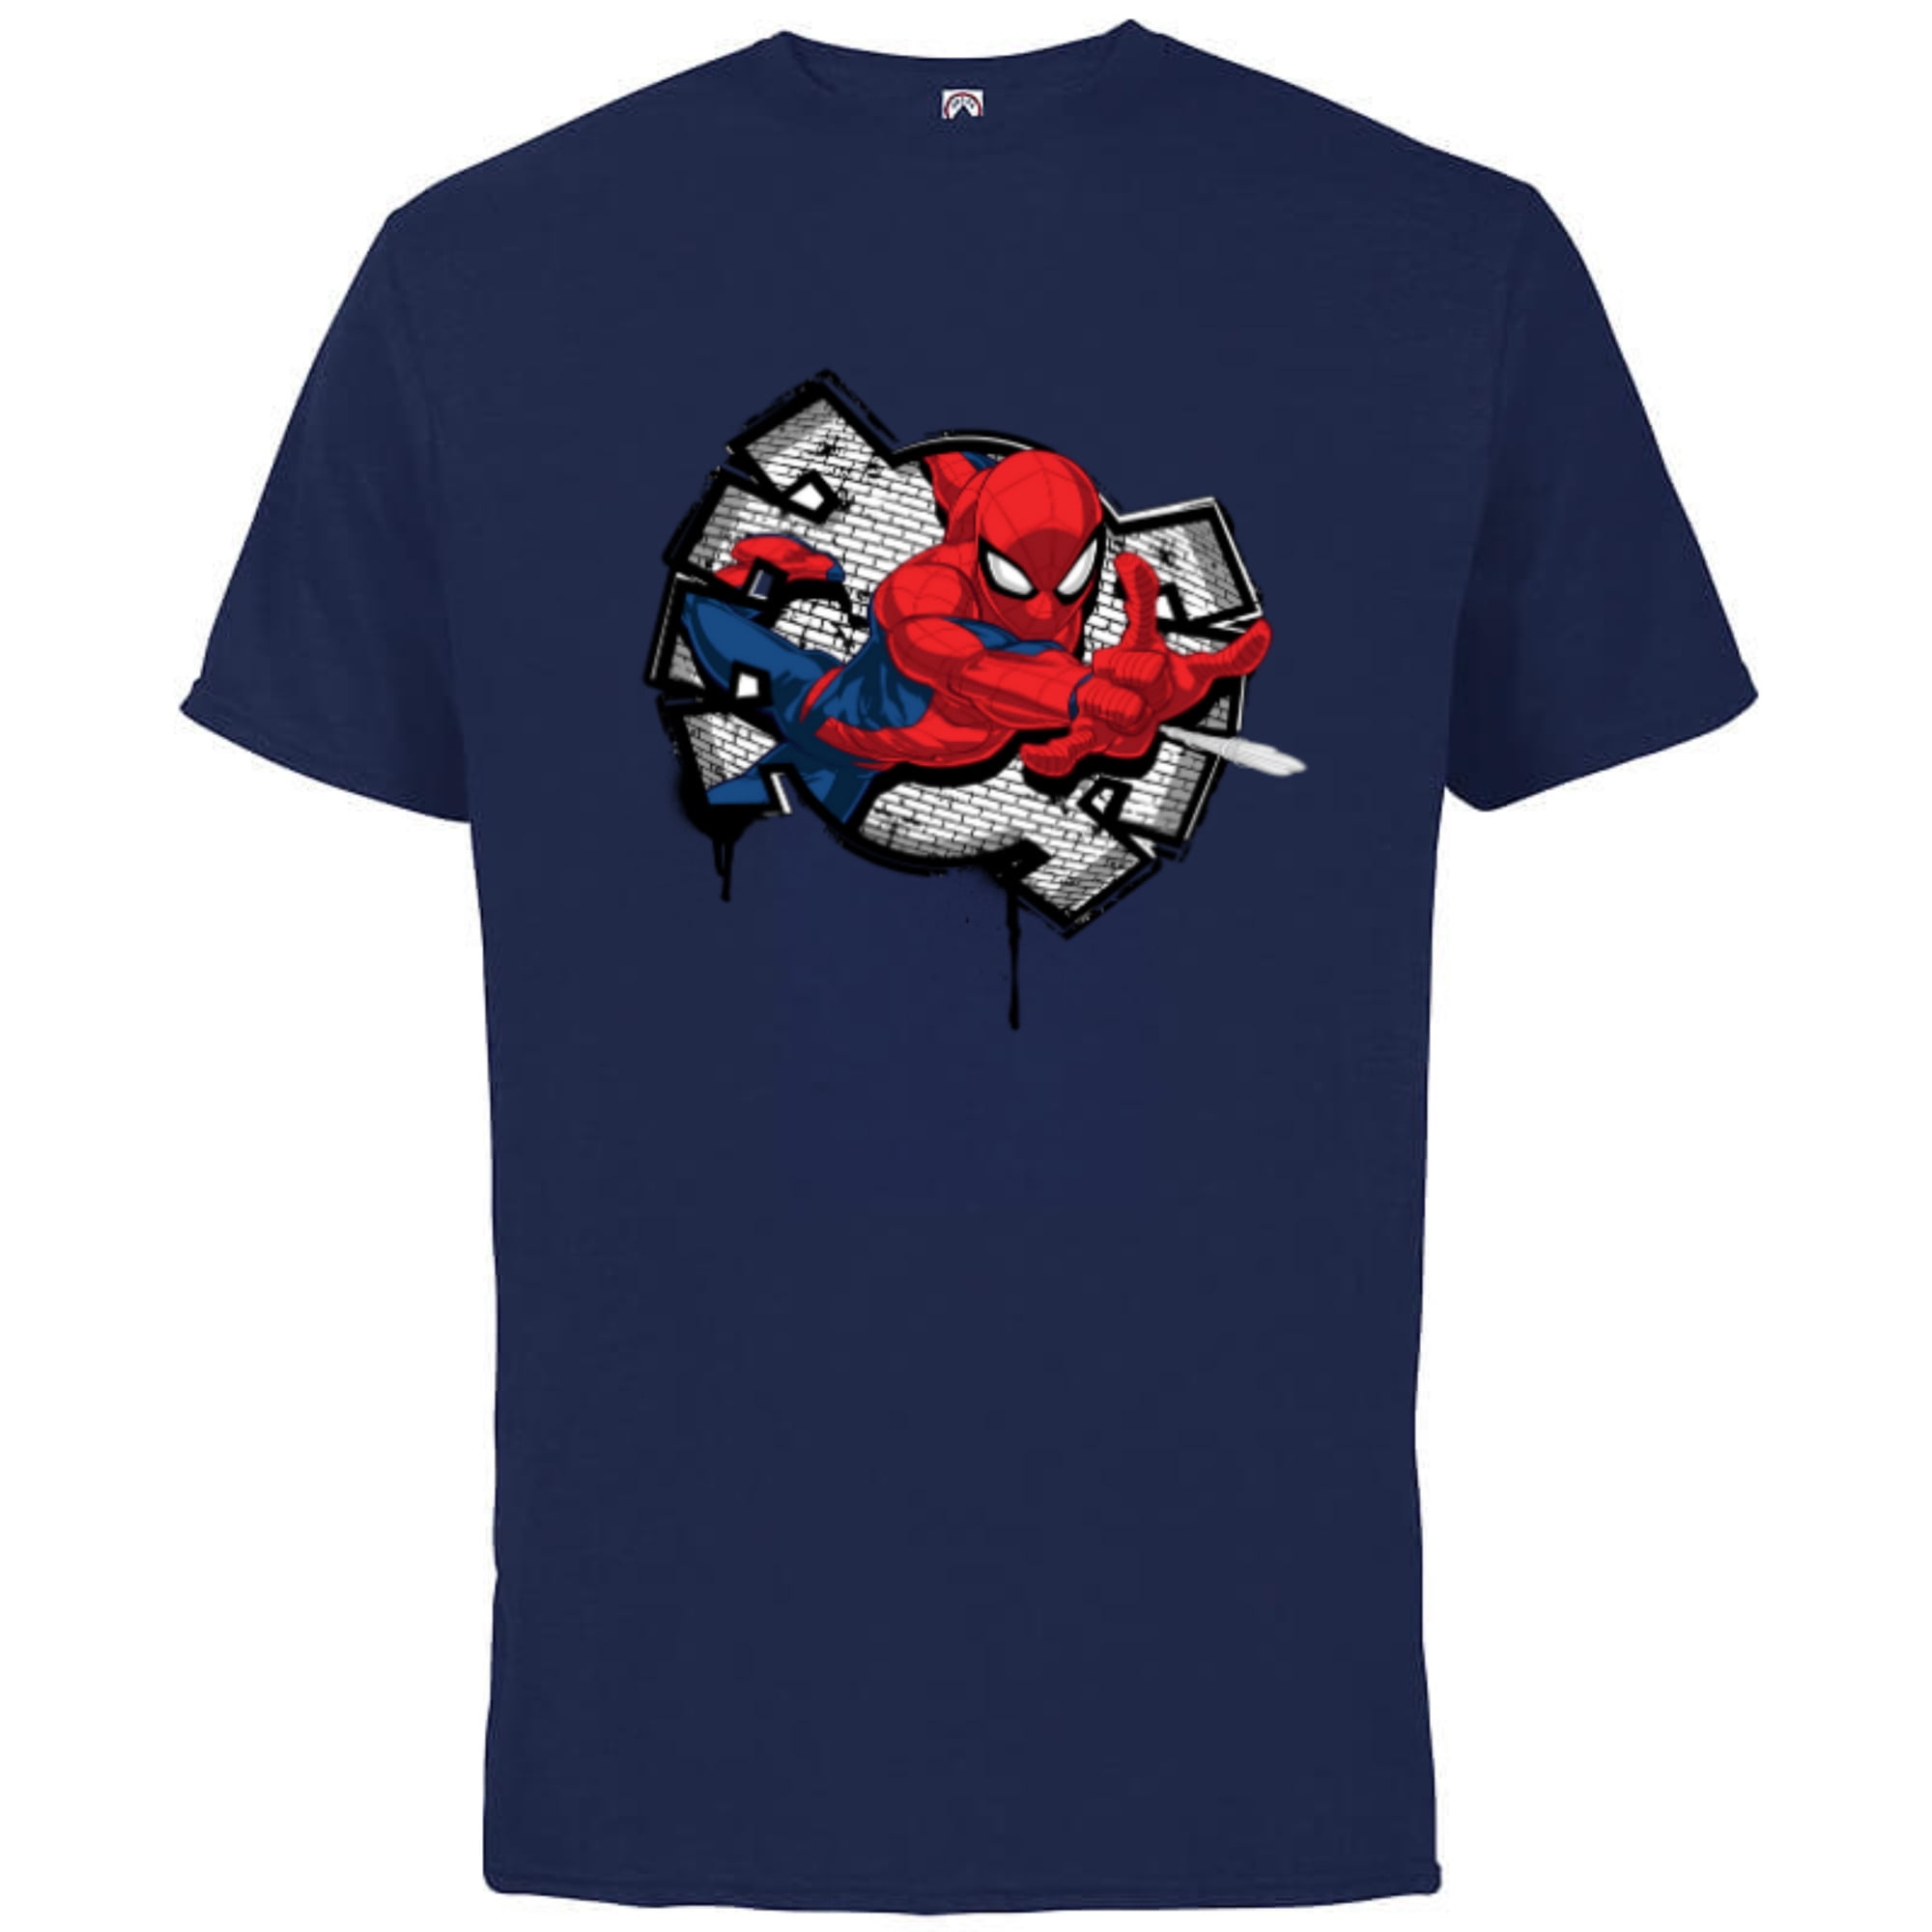 new young la super hero superhero compression shirt Top Men’s X-Large